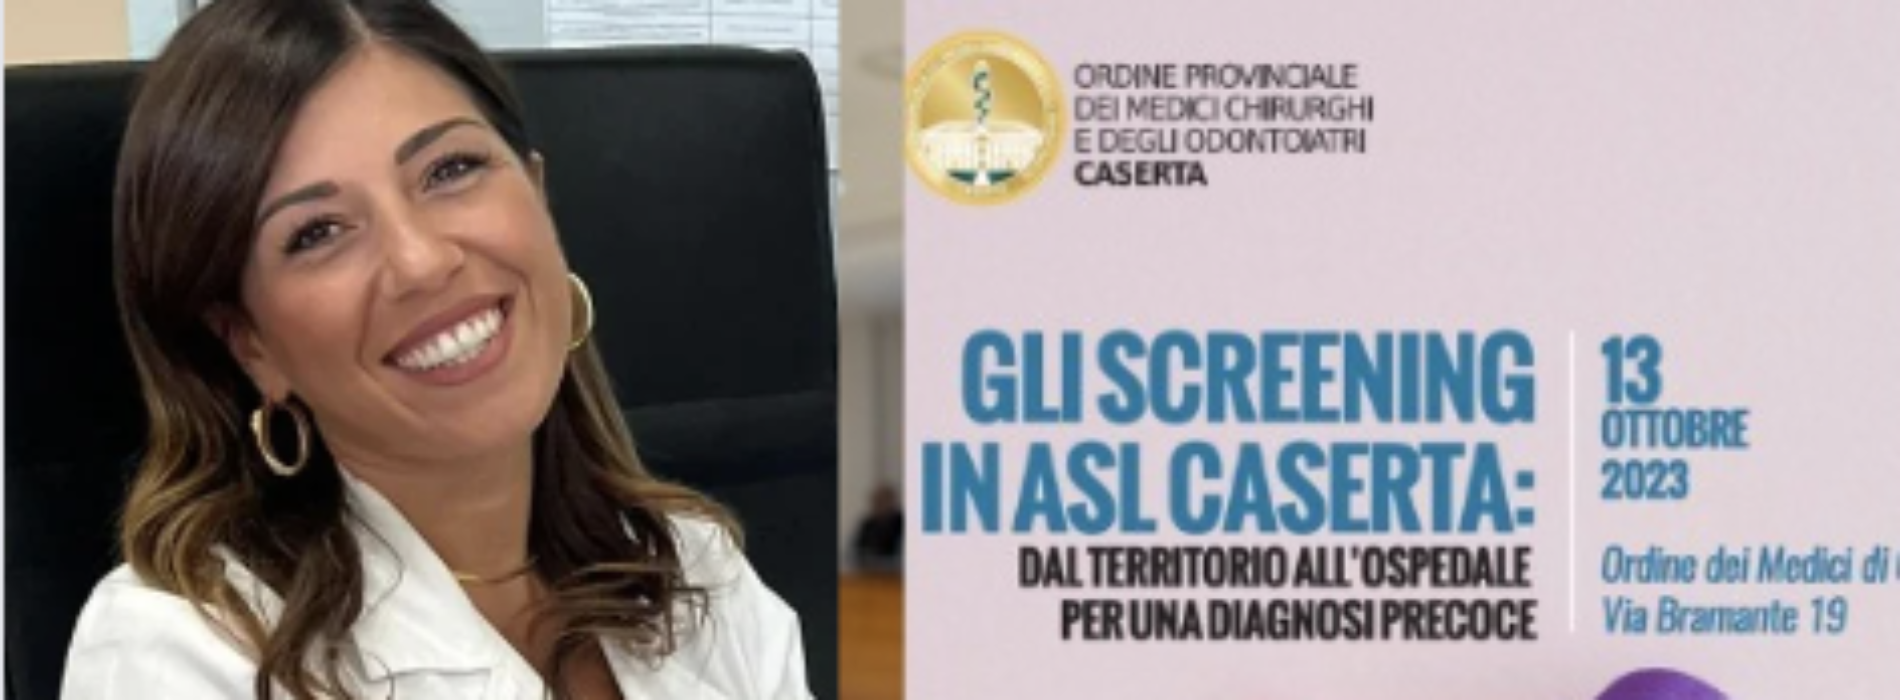 Gli screening in Asl Caserta, il corso all’Ordine dei Medici